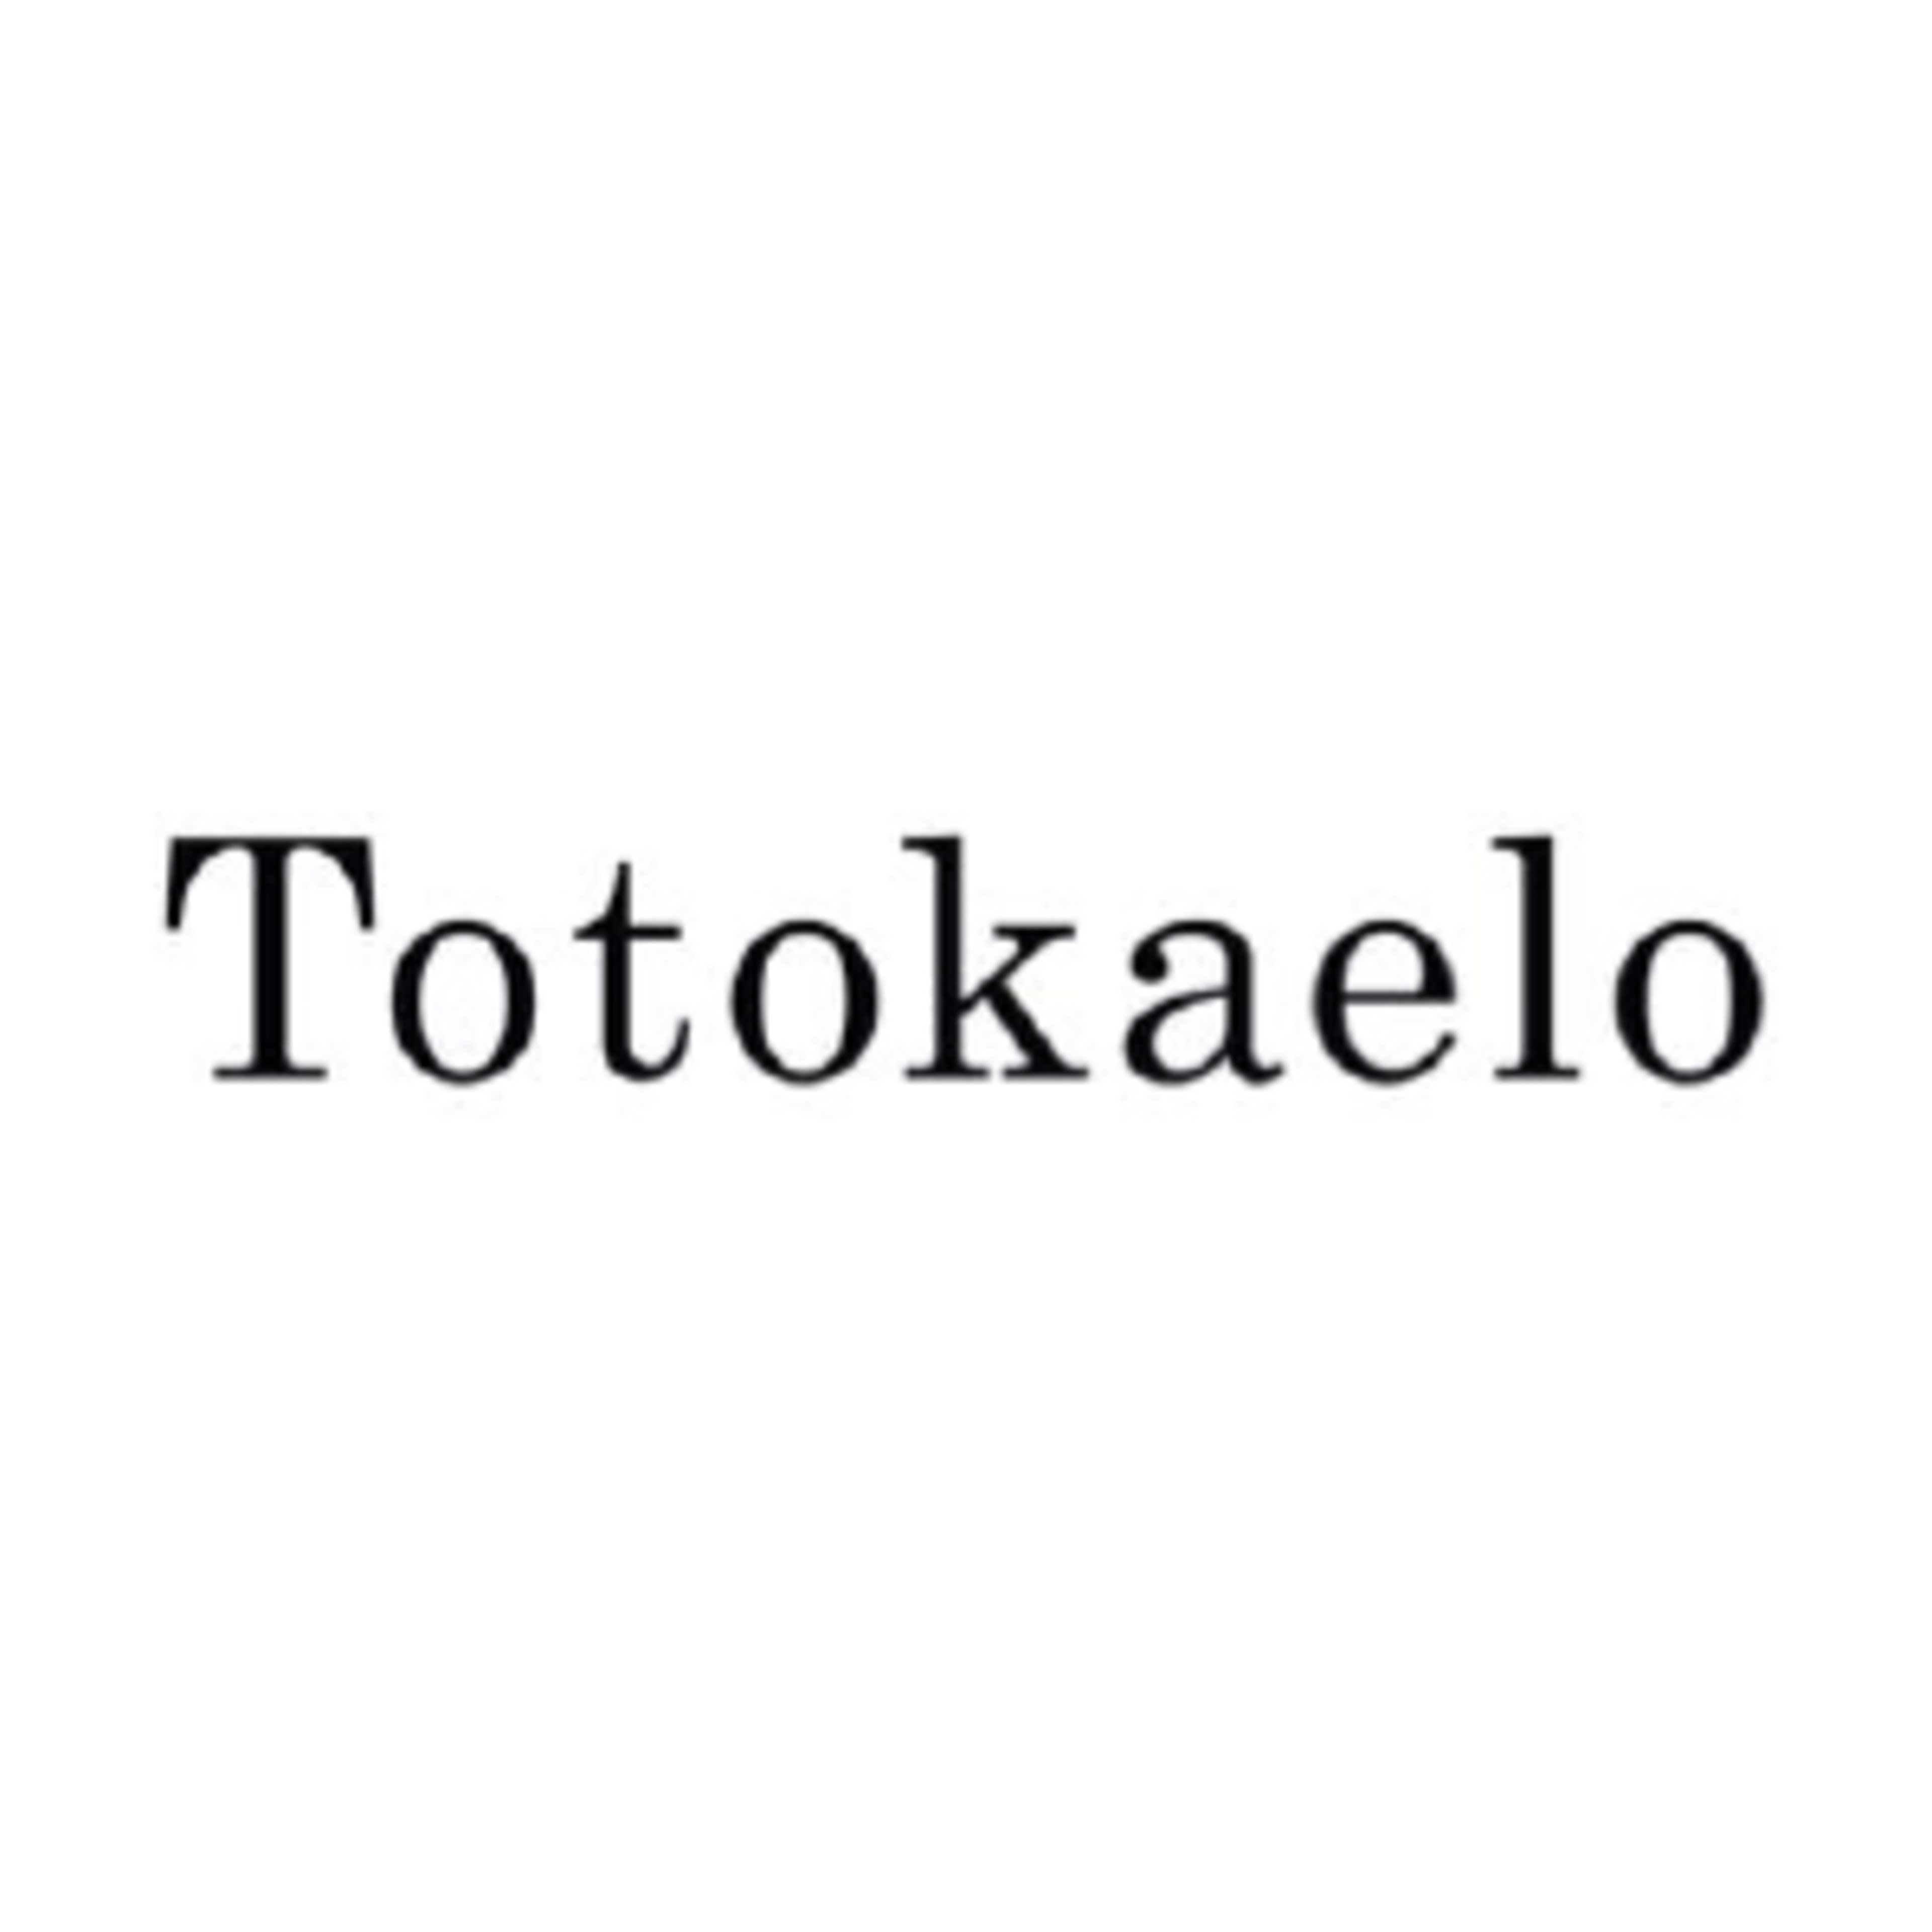 TotokaeloCode